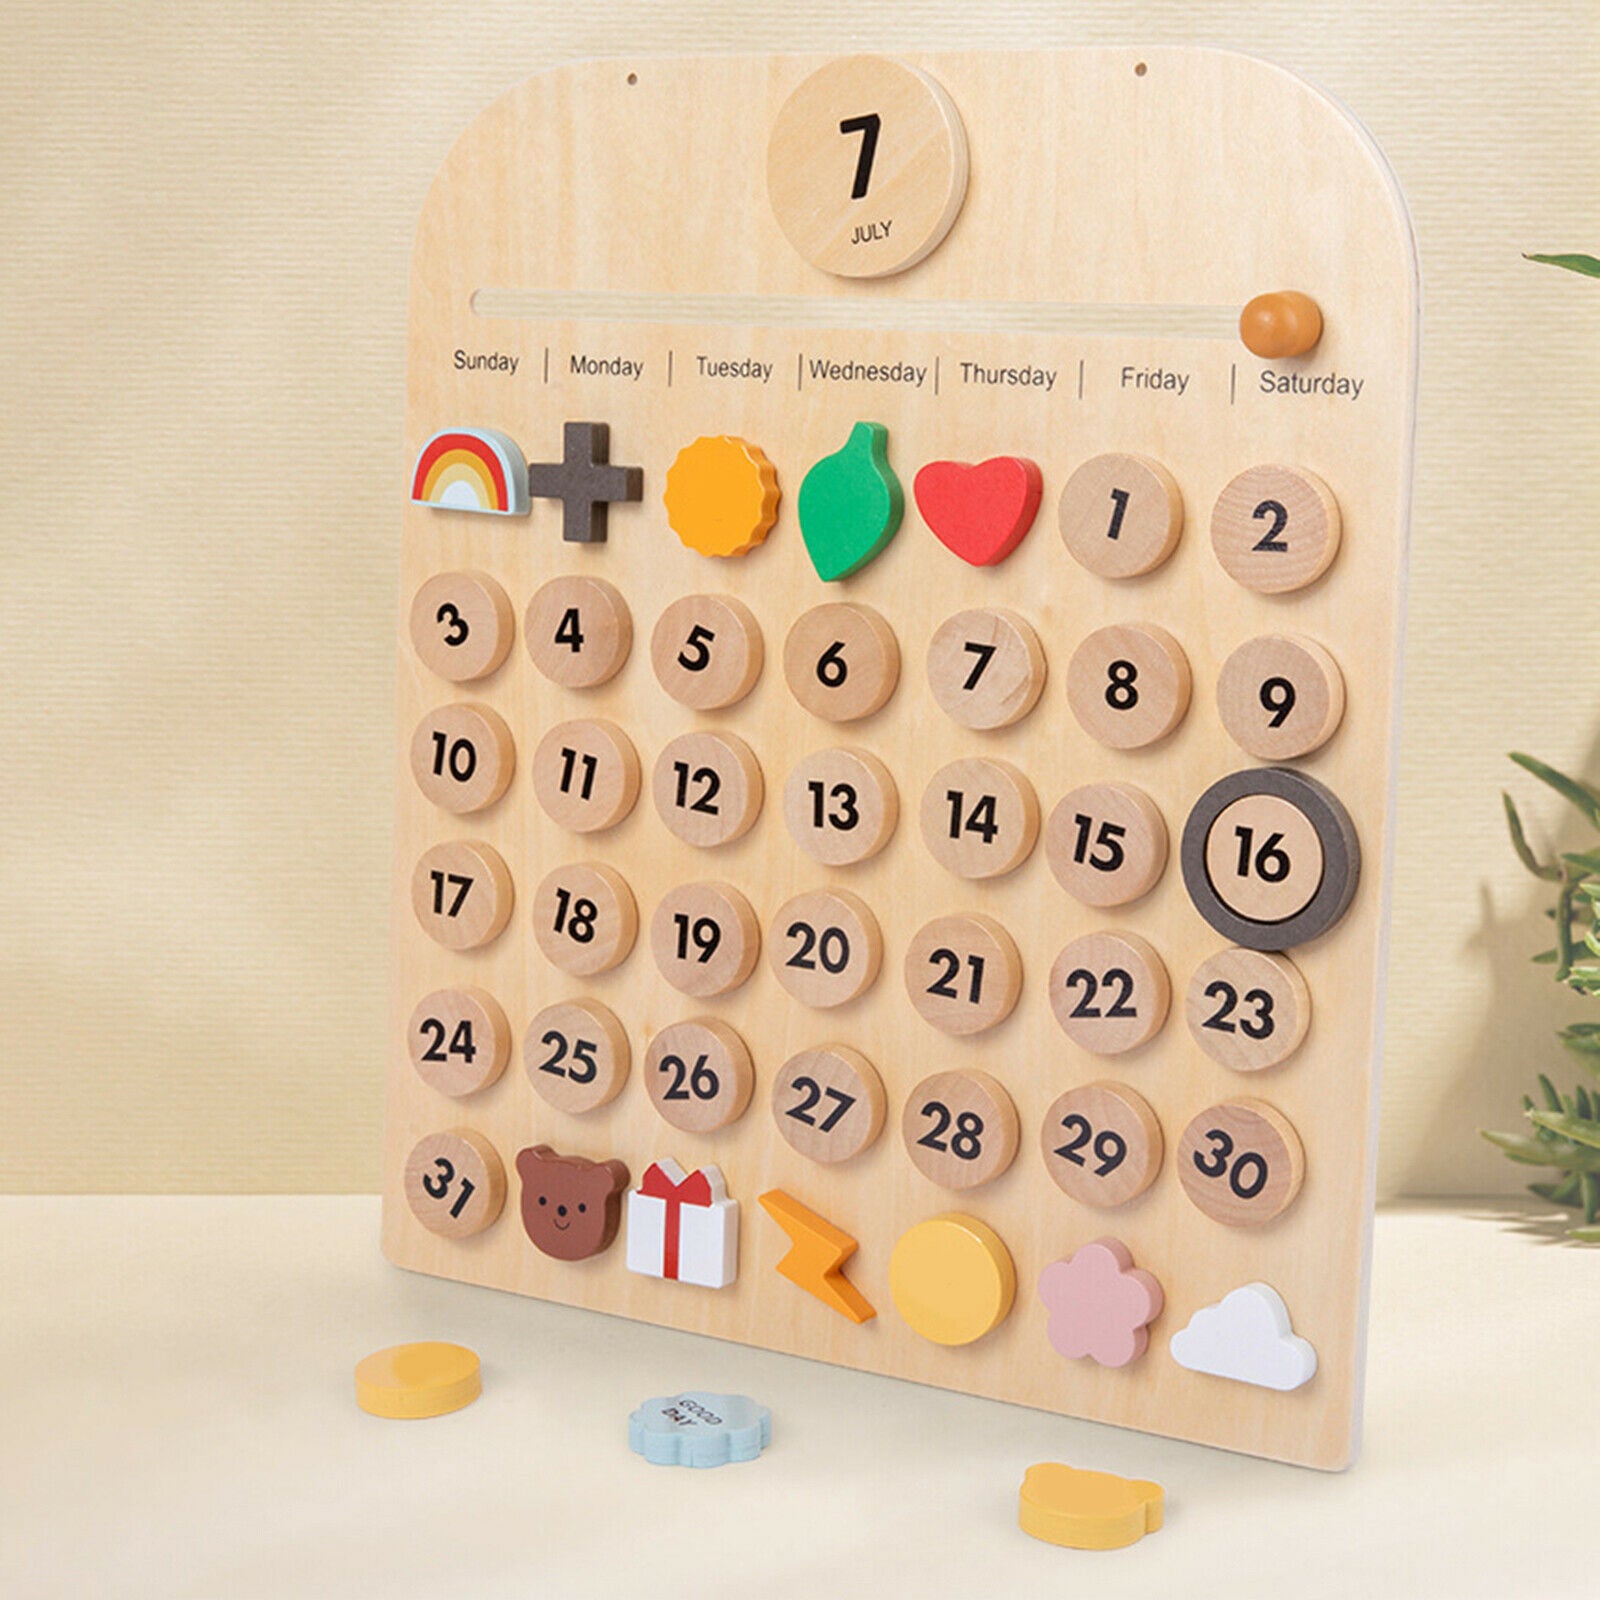 Wooden Desk Wall Calendar Montessori Homeschool Calendar for